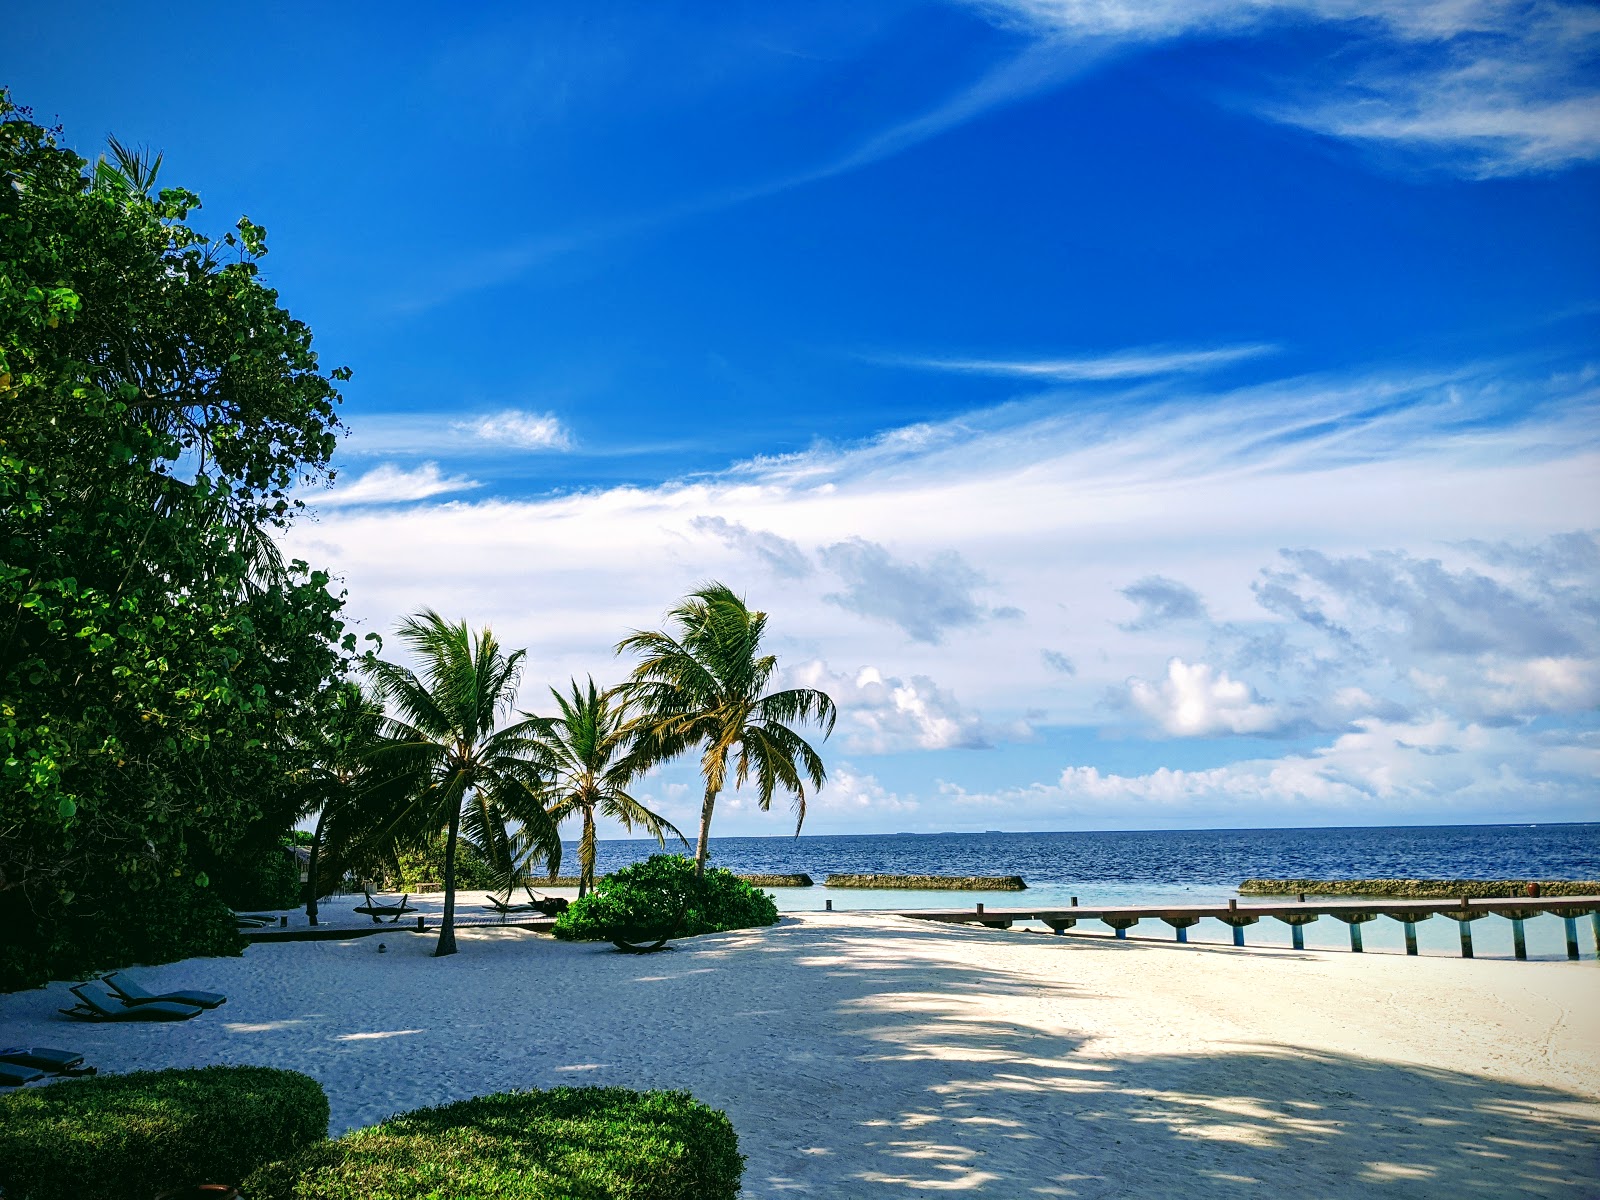 Coco Bodu Hithi Resort'in fotoğrafı beyaz kum yüzey ile